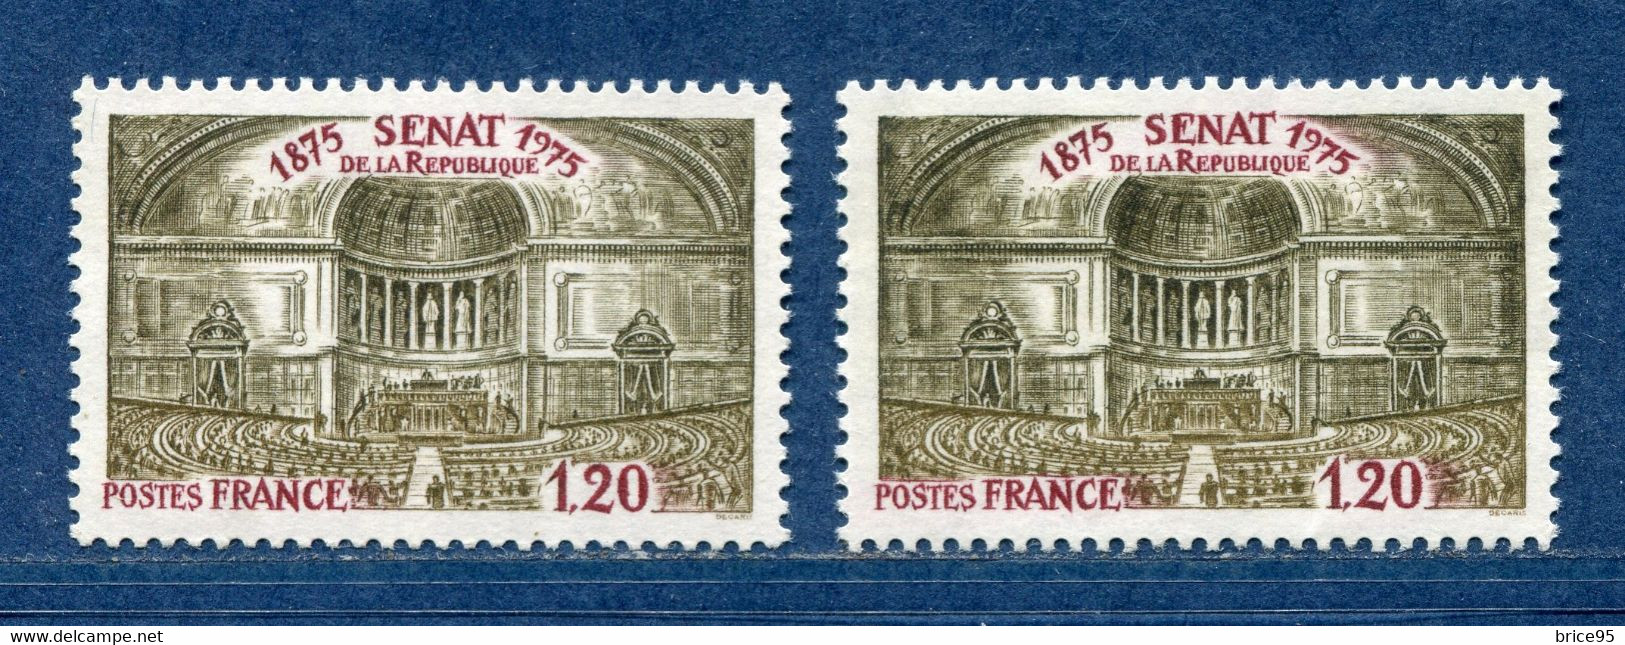 ⭐ France - Variété - YT N° 1843 - Couleurs - Pétouille - Neuf Sans Charnière - 1975 ⭐ - Nuovi